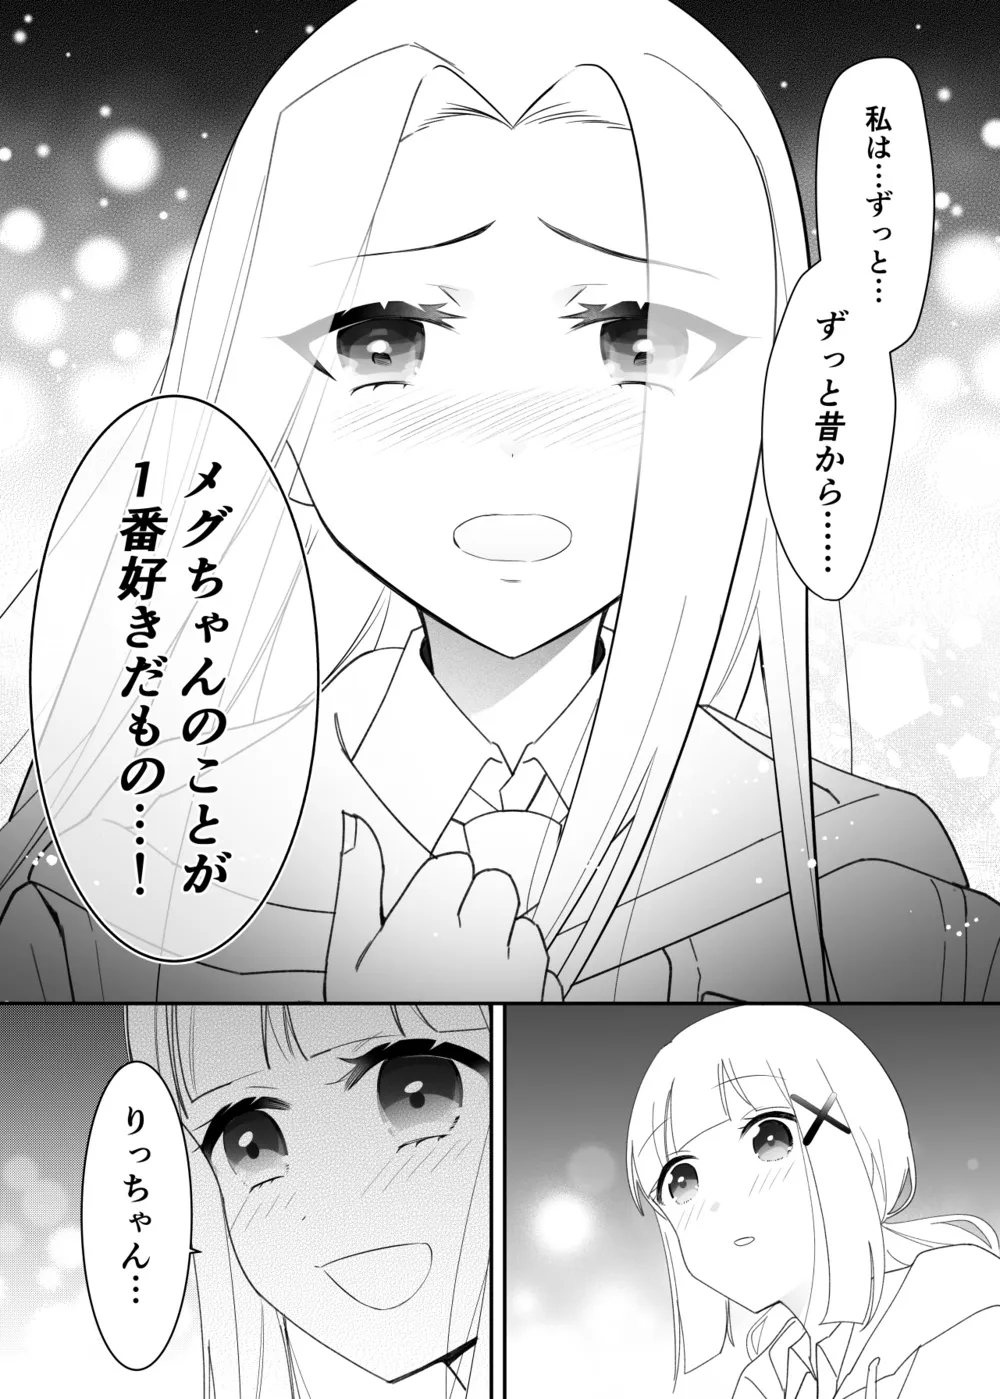 『拗らせ片想い幼馴染百合クリスマス漫画』(7/12)